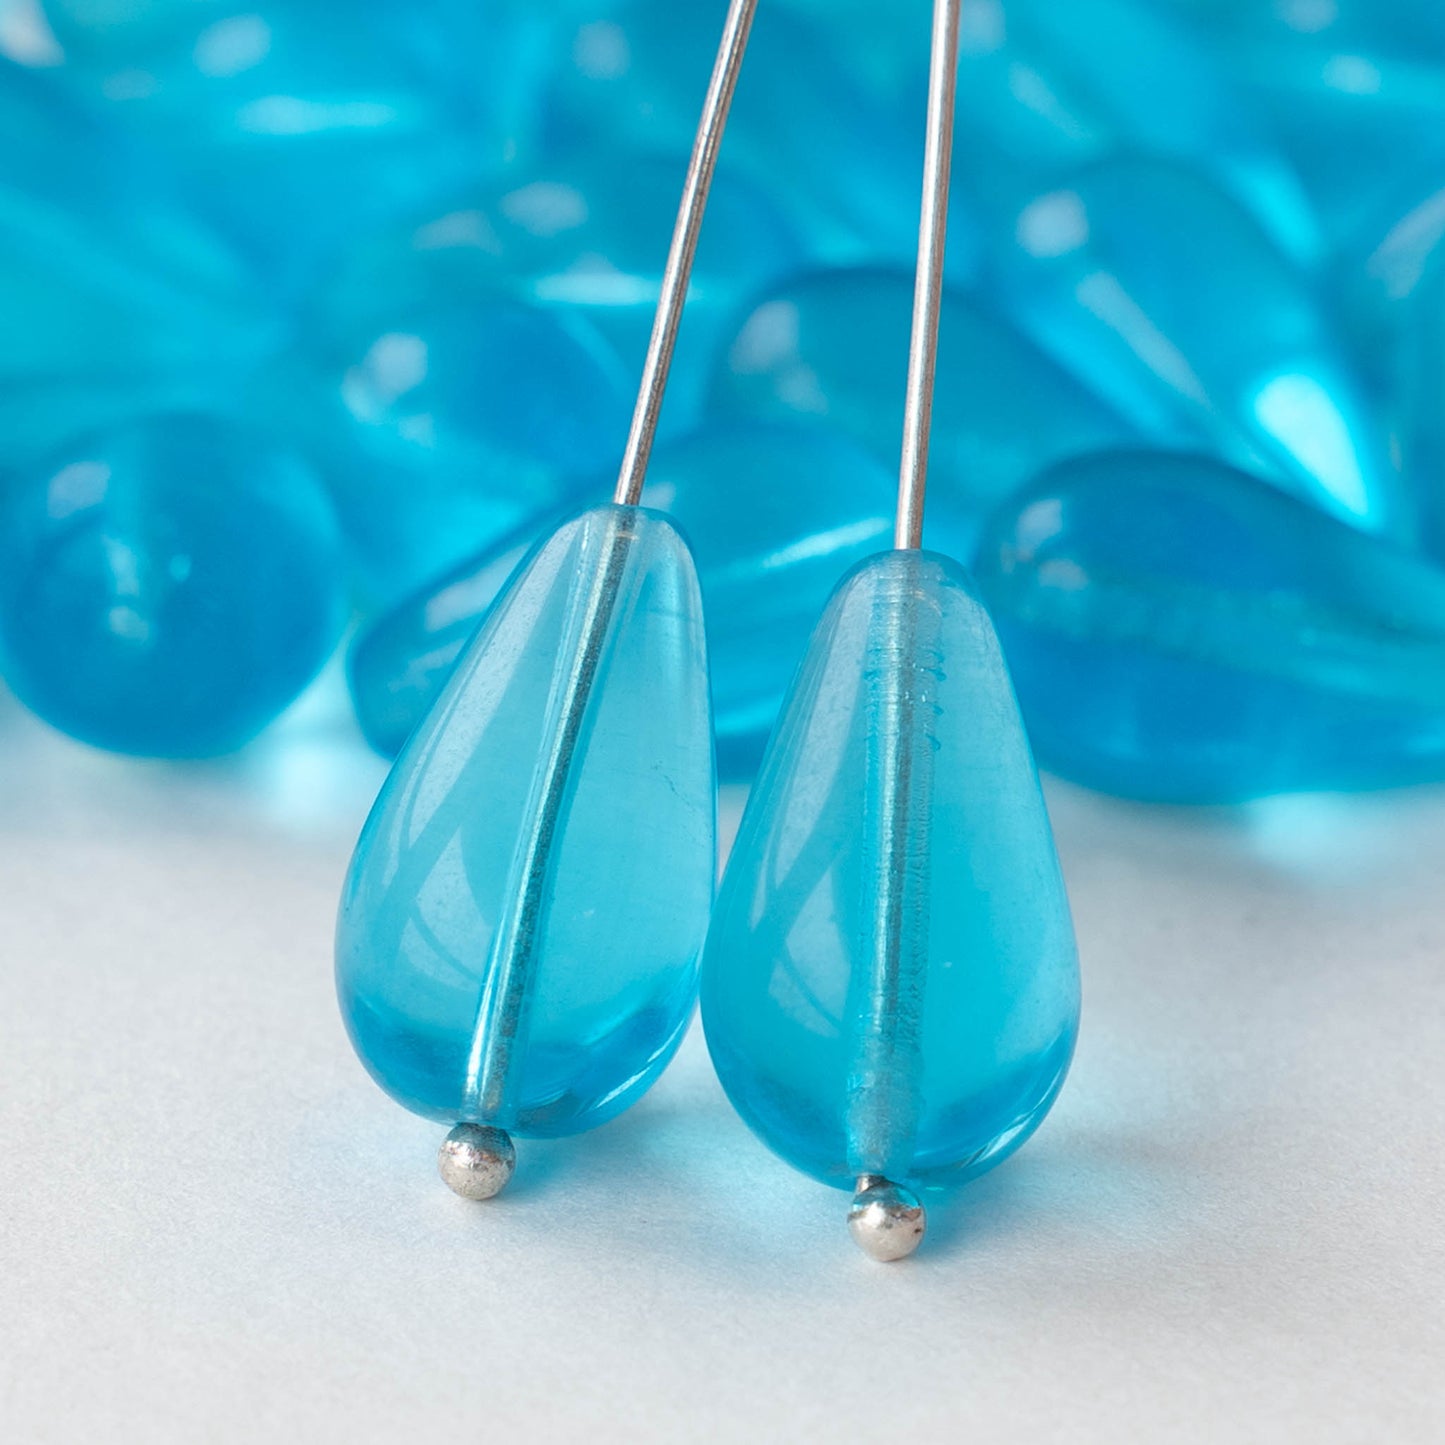 11x18mm Long Drilled Drops - Aqua Blue - 20 Beads